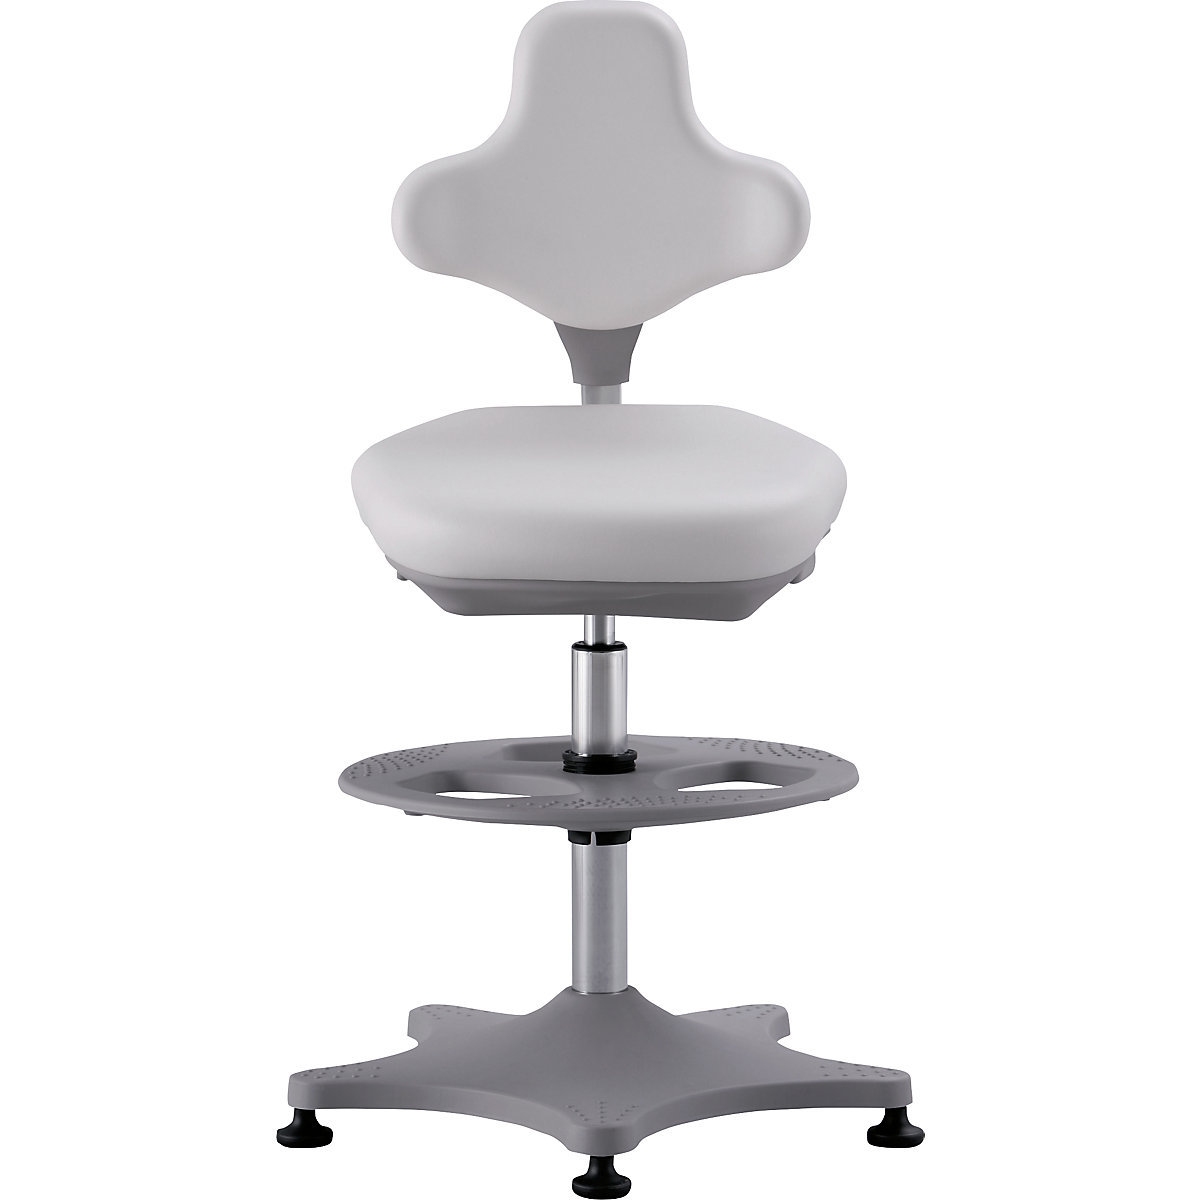 Laboratorní pracovní otočná židle LABSTER – bimos, přestavování výšky 550 – 800 mm, s patkami a spodním kruhem, koženkový potah, bílá-4